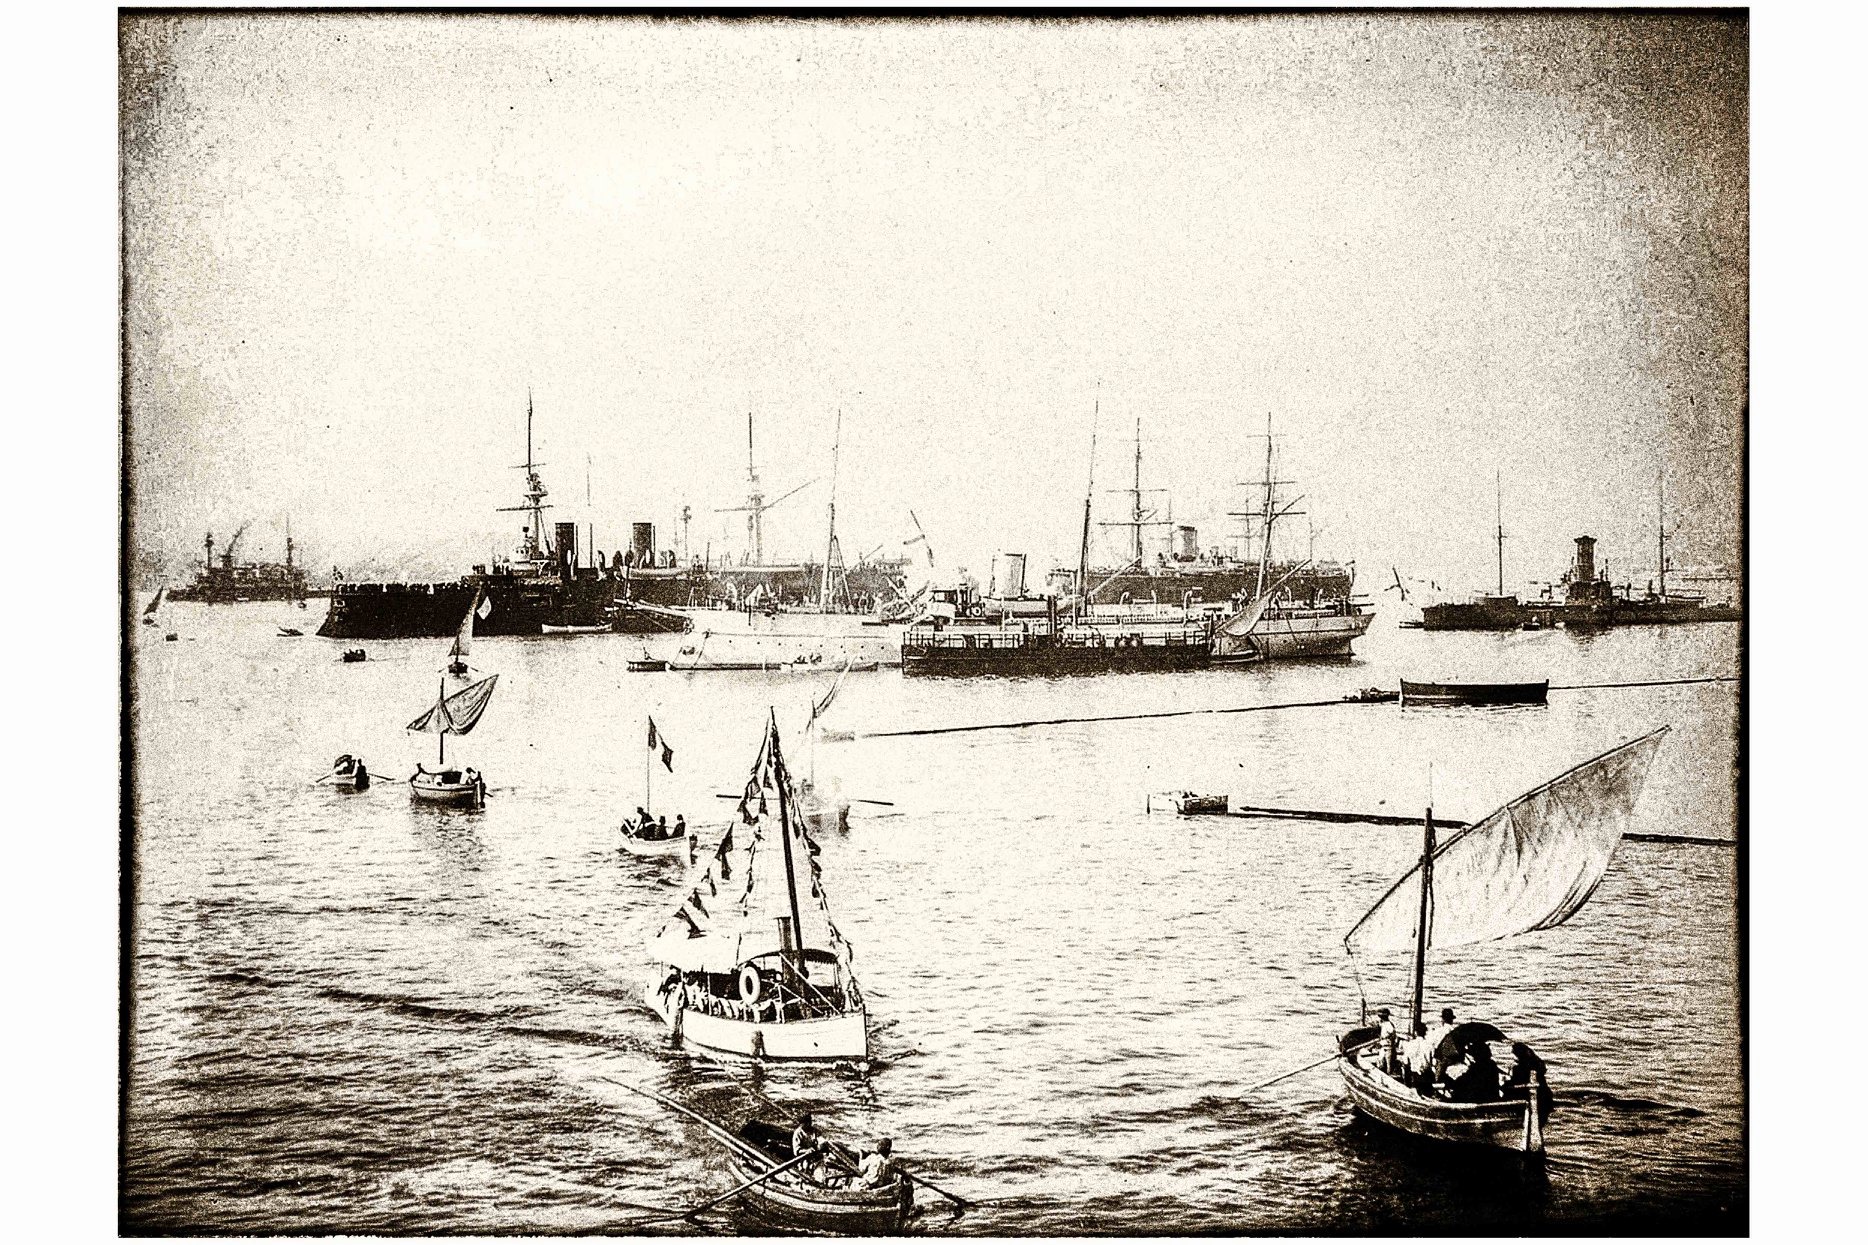 Le Lancement du Jauréguiberry (n°904) à La Seyne sur mer (27 octobre 1893)